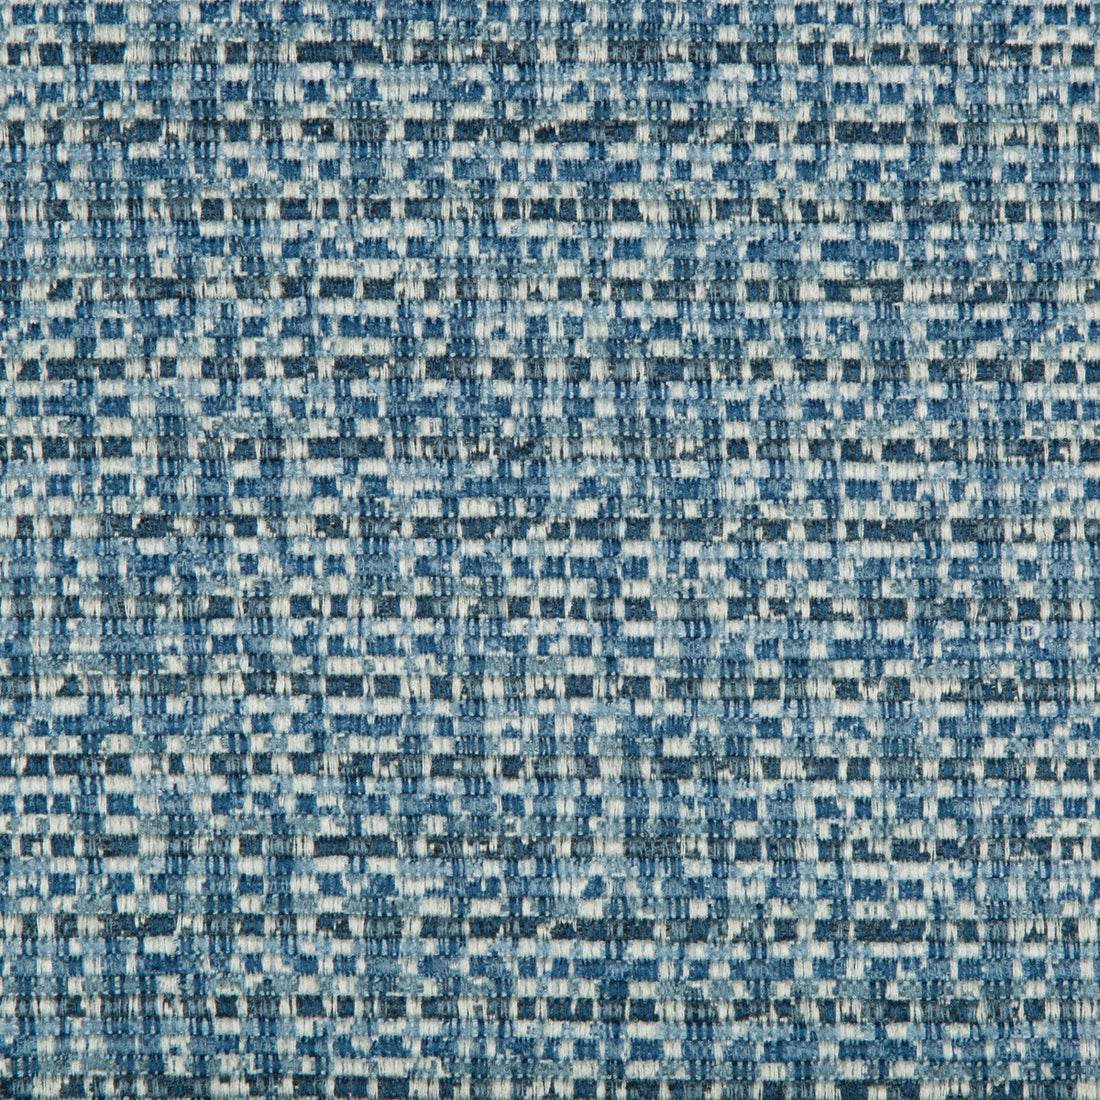 Kravet Basics fabric in 35225-5 color - pattern 35225.5.0 - by Kravet Basics